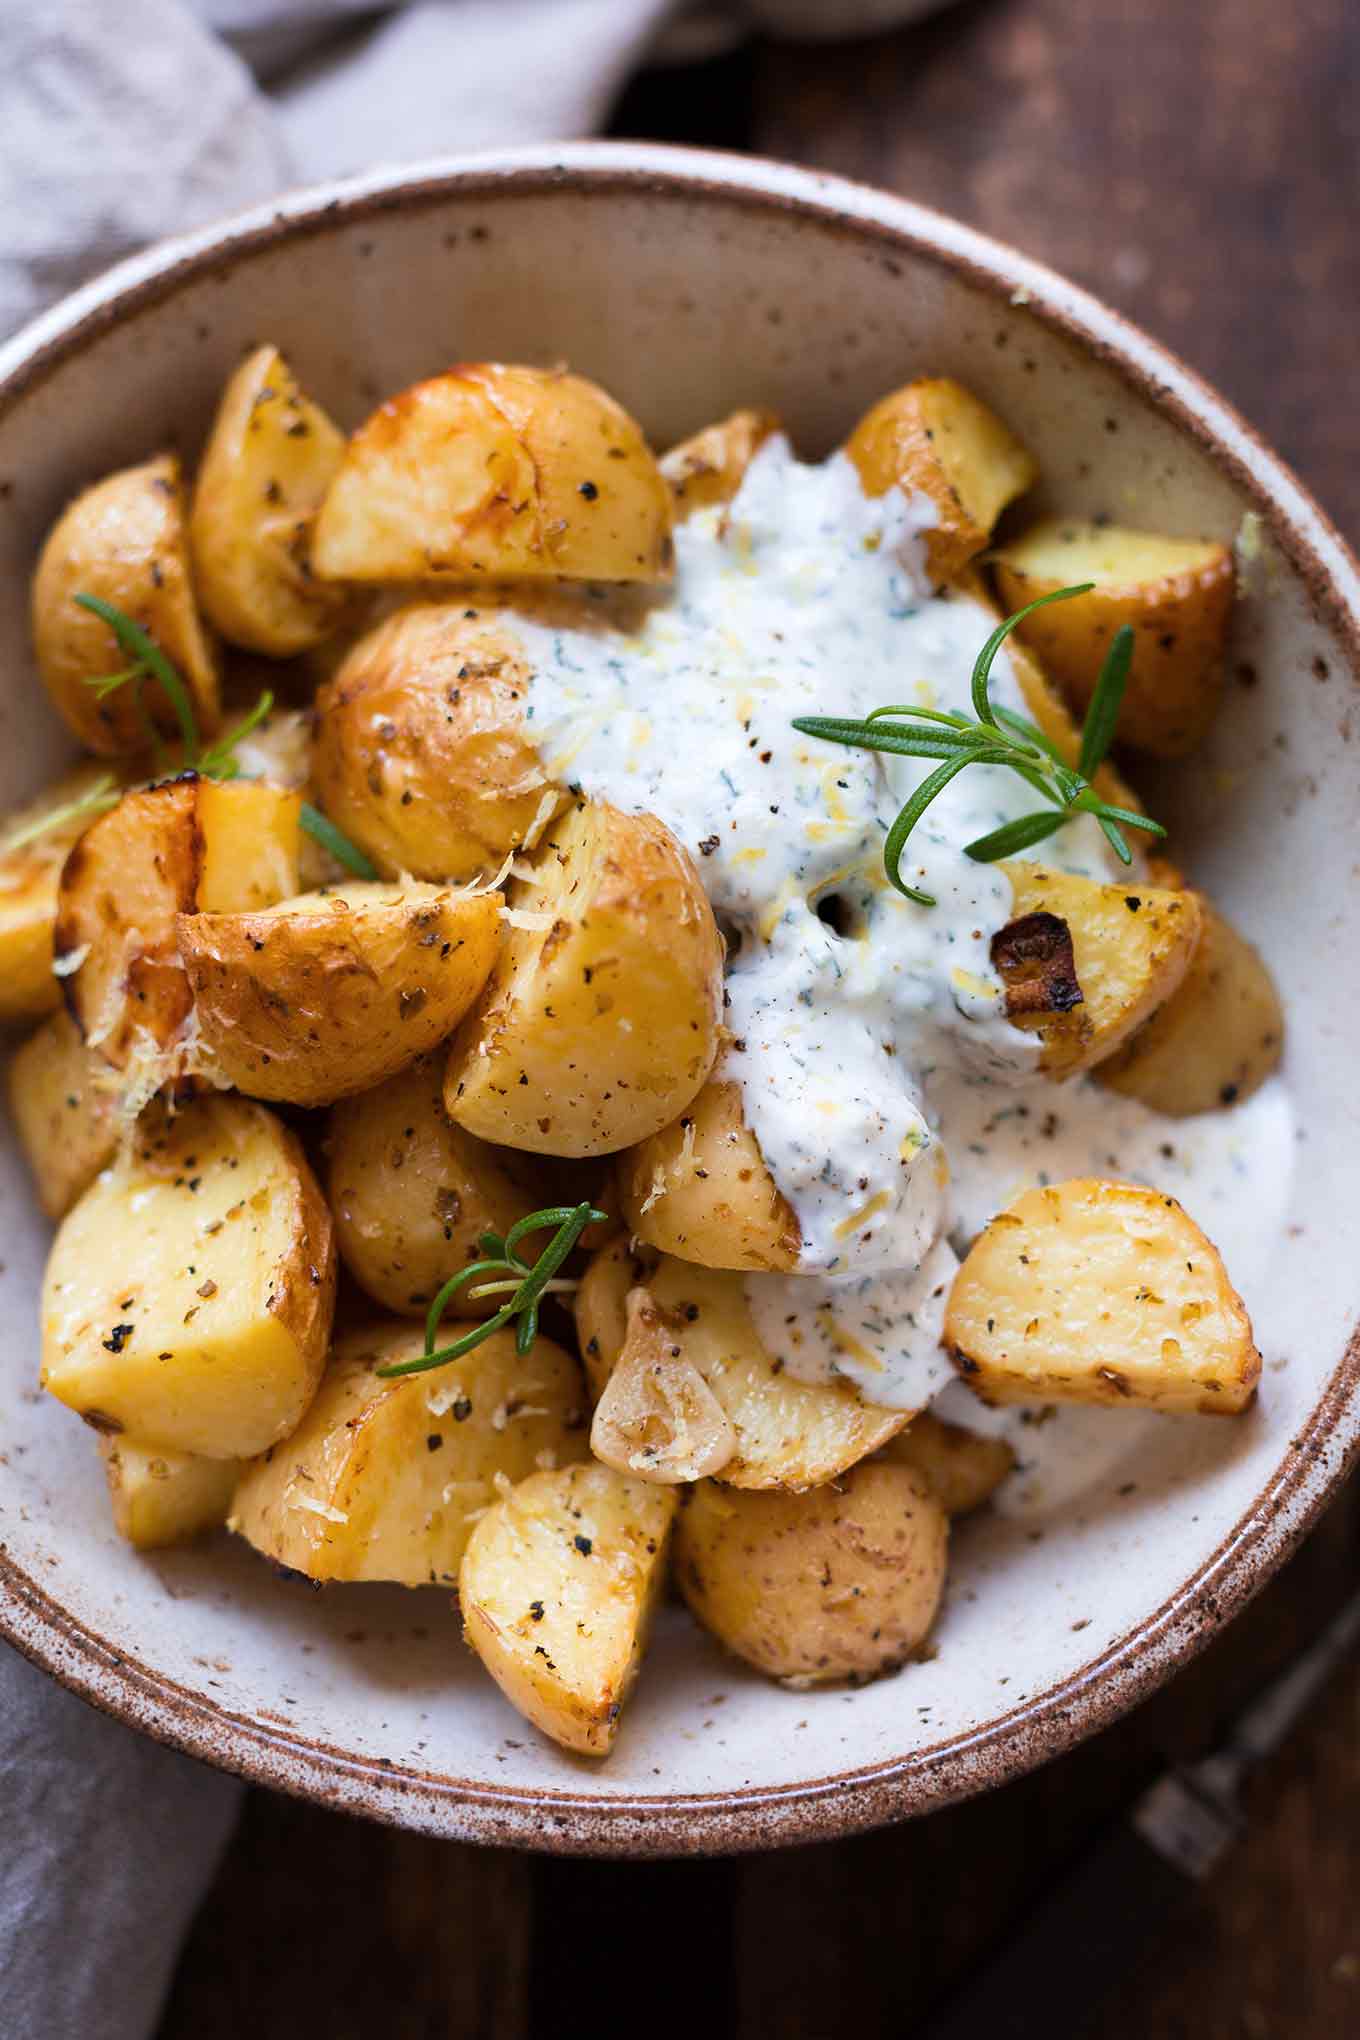 Griechische Ofenkartoffeln mit Joghurt-Feta-Dip: 15 schnelle und einfache Vorratskammer-Rezepte. - Kochkarussell.com #rezepte #schnellundeinfach #feierabendküche 